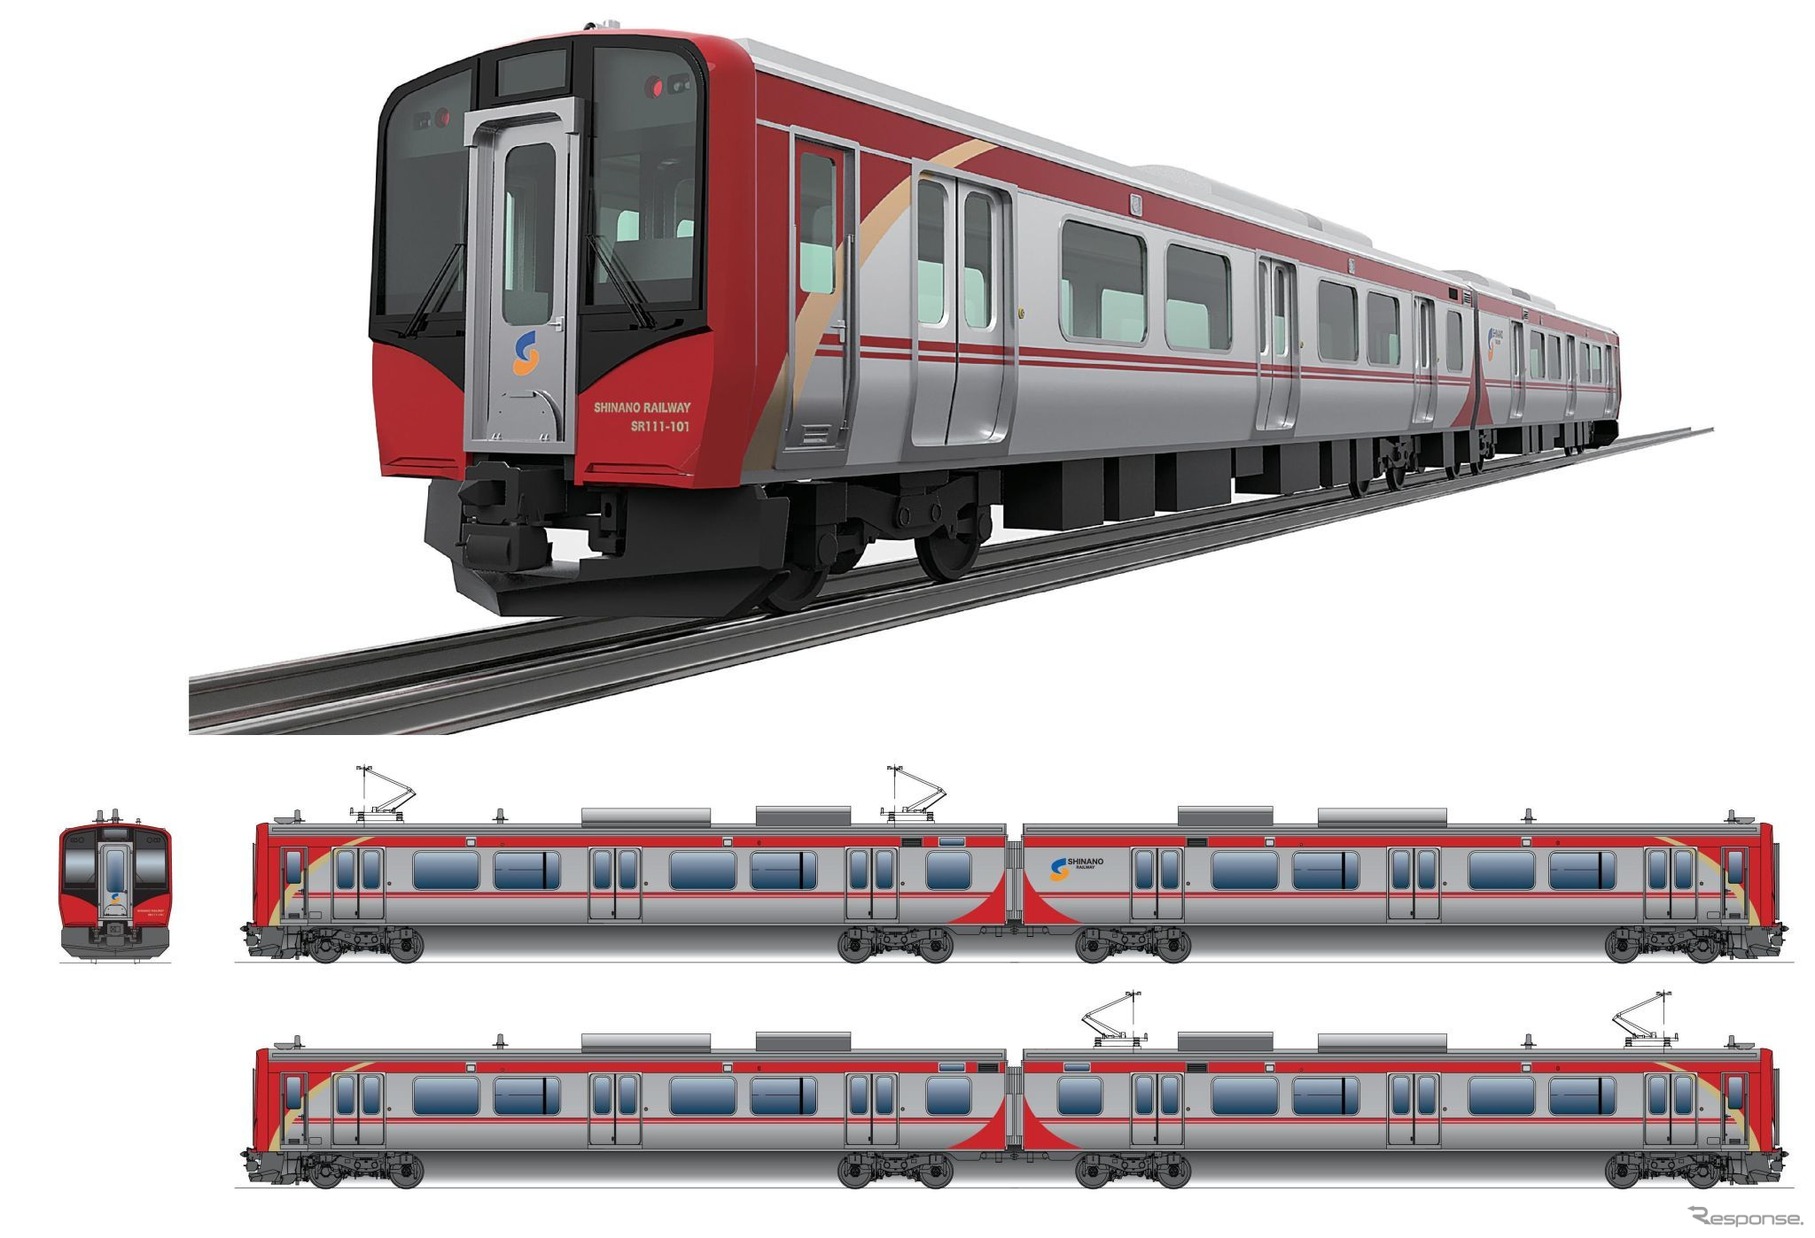 3月13日のダイヤ改正から運行を開始する一般列車用SR1系のデザイン。「地域に寄り添い、その先の未来へ」をコンセプトに、しなの鉄道社員が地域に寄せる「情熱」「温かさ」を表わしたという赤をベースに、「地域の未来へ挑戦していく姿勢」を表現したというゴールドのラインを配置。両端の曲線は地域を包み込む「やさしさ」、中央のラインは沿線の地域をひとつにつなぐ、力をあわせるといった意味合いが込められている。